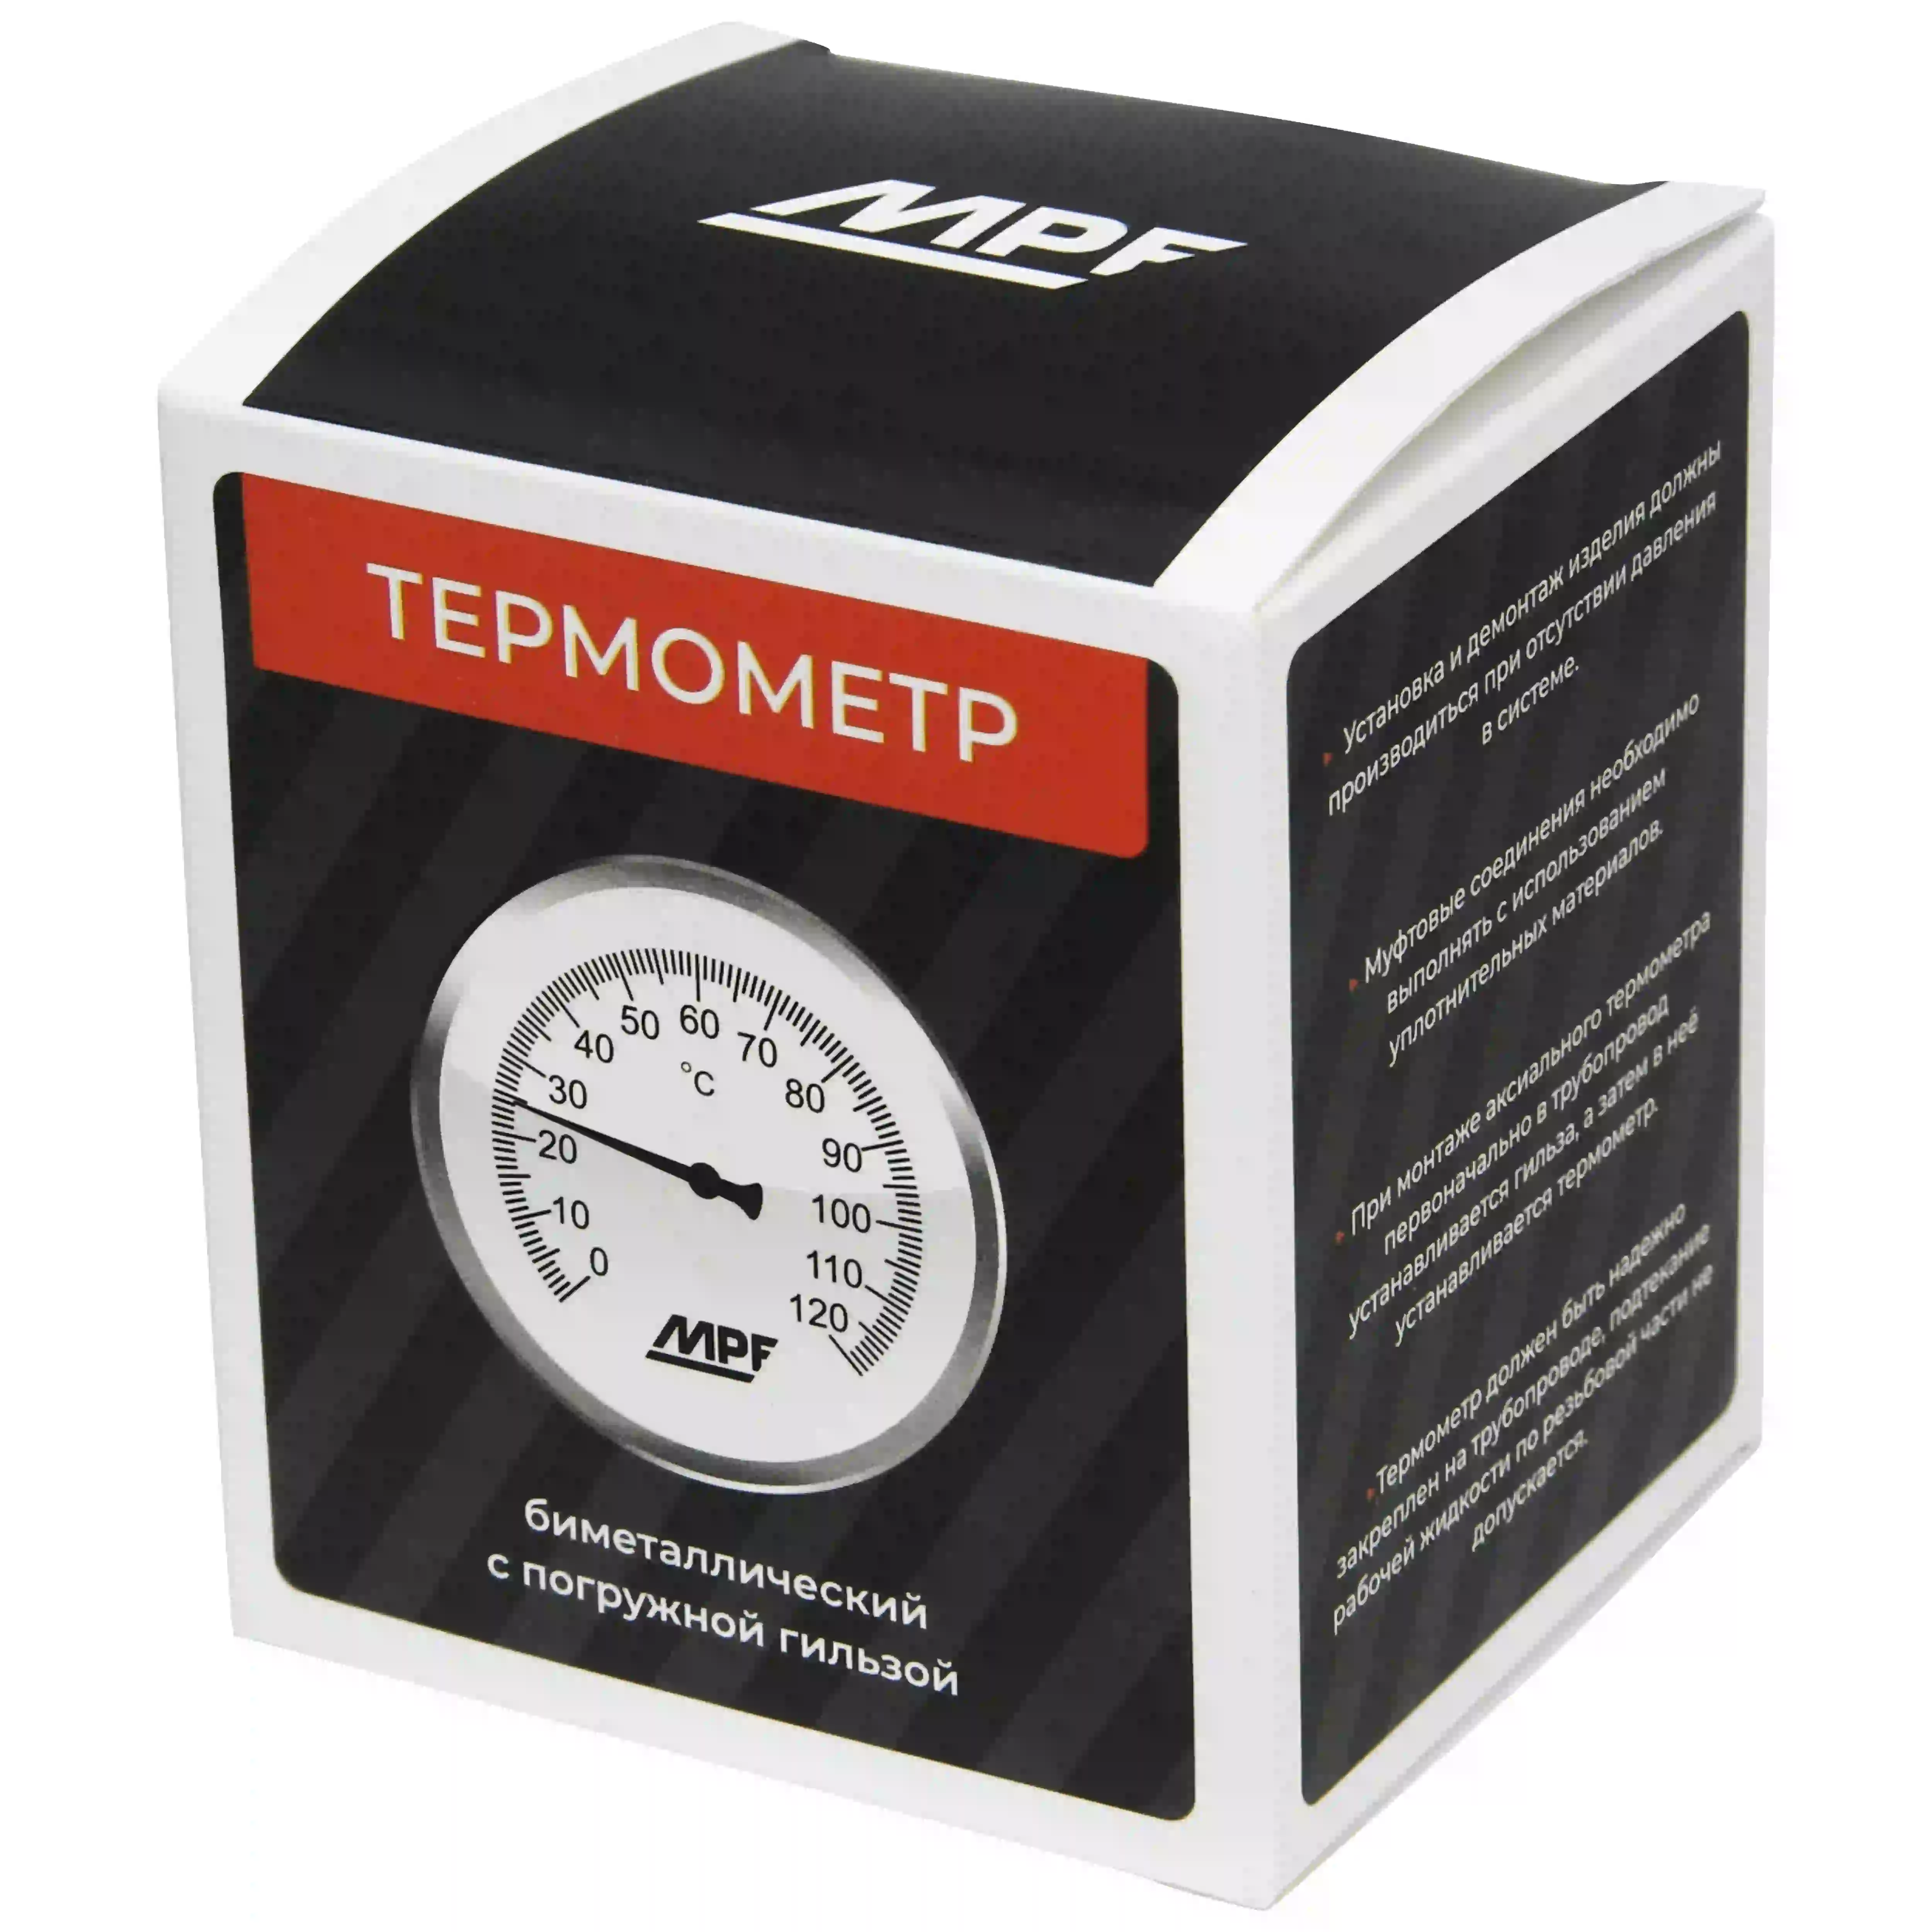 Термометр биметал. с погружной гильзой, темп. 120 гр., MP-У ИС.161753